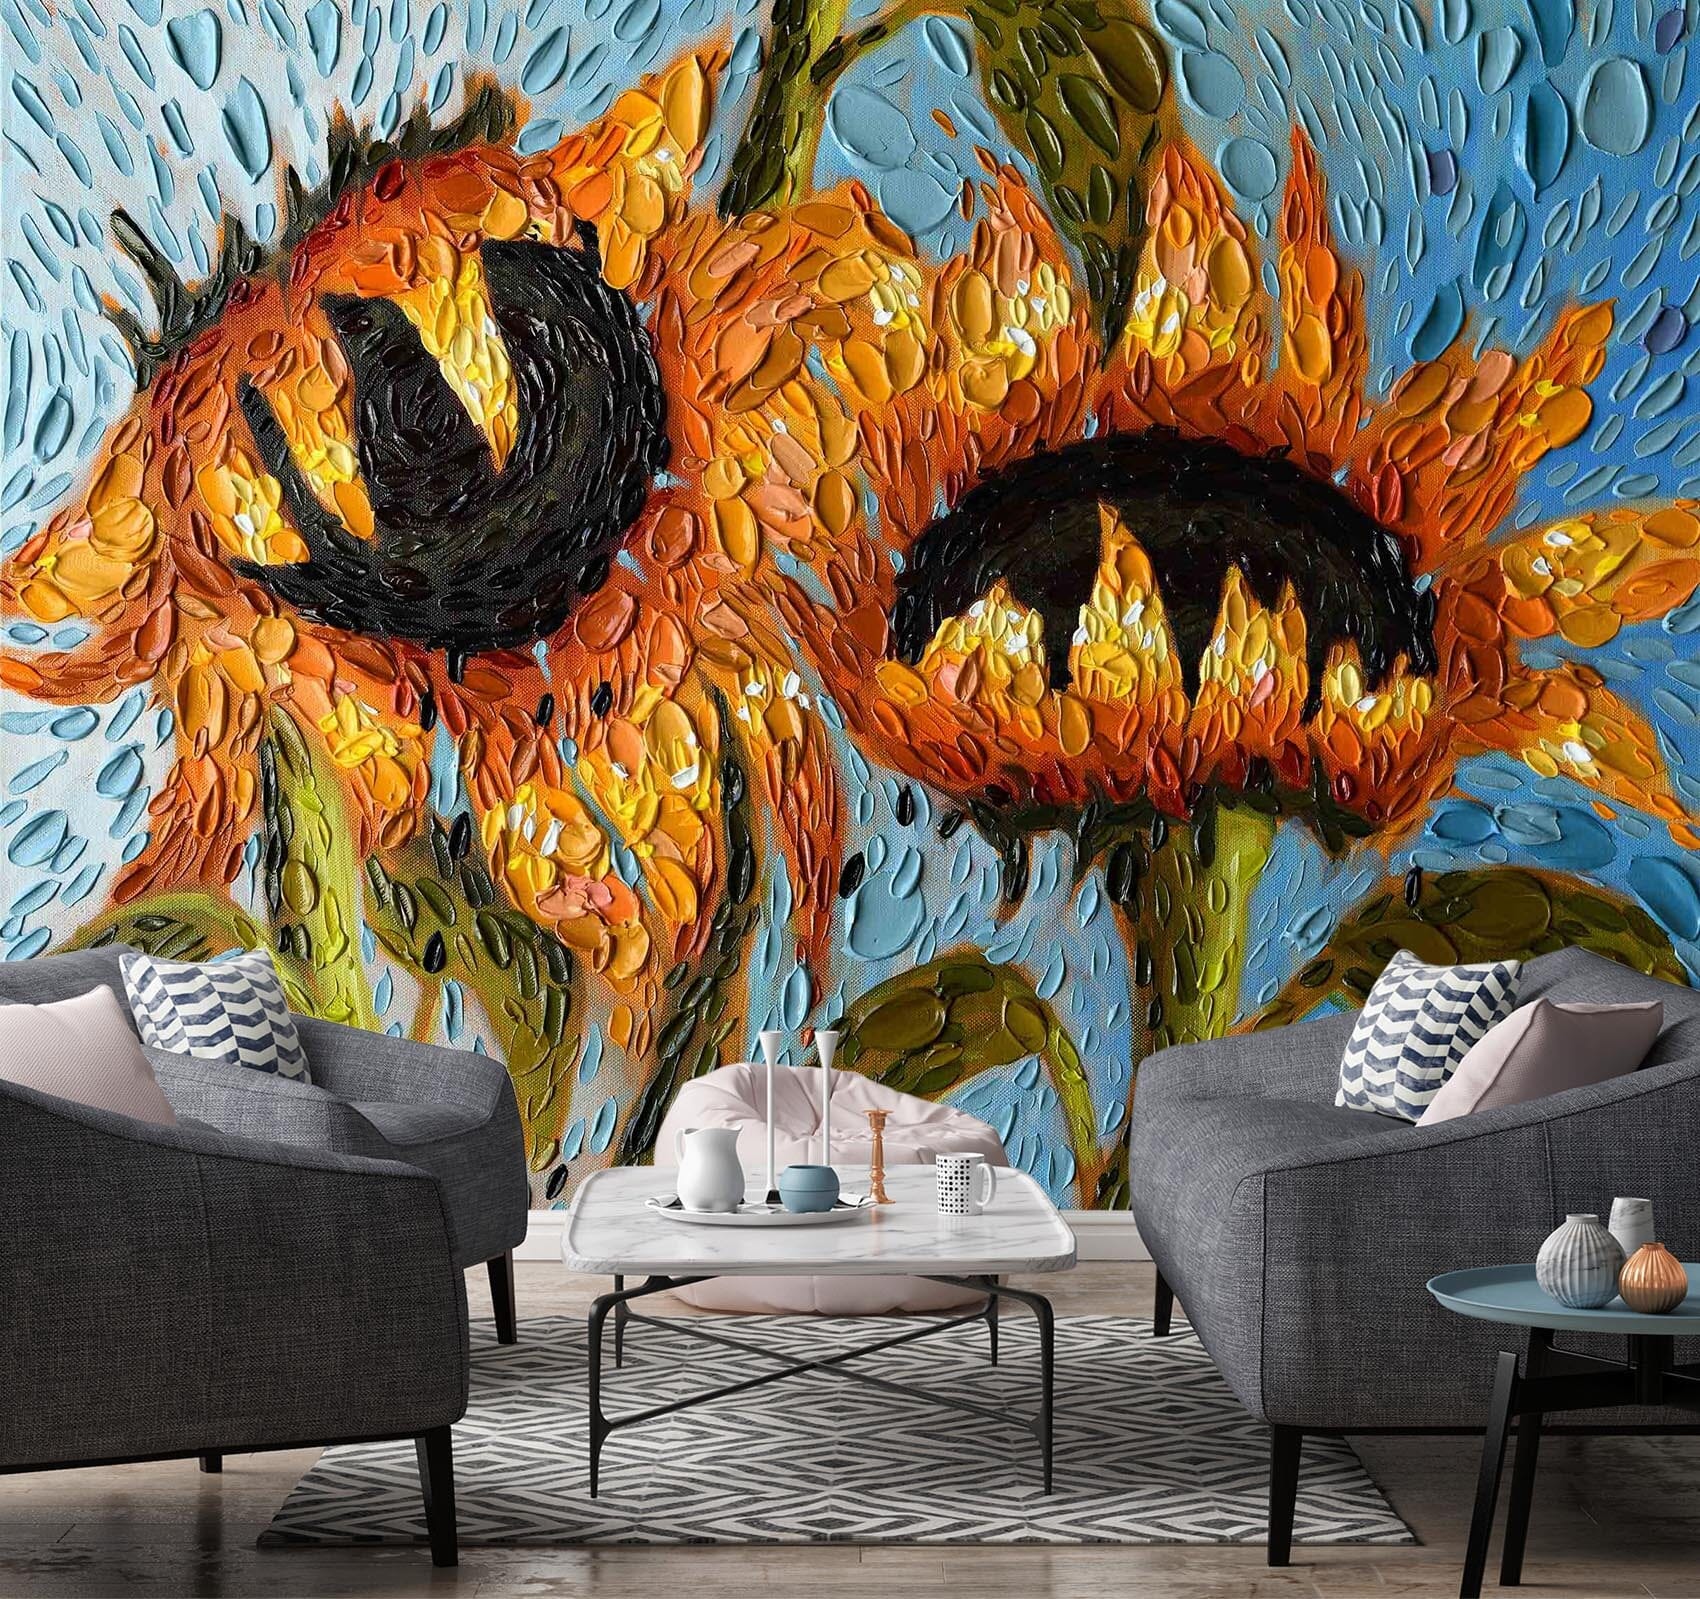 3D Serenity Sunflowers 1414 Dena Tollefson Wall Mural Wall Murals Wallpaper AJ Wallpaper 2 